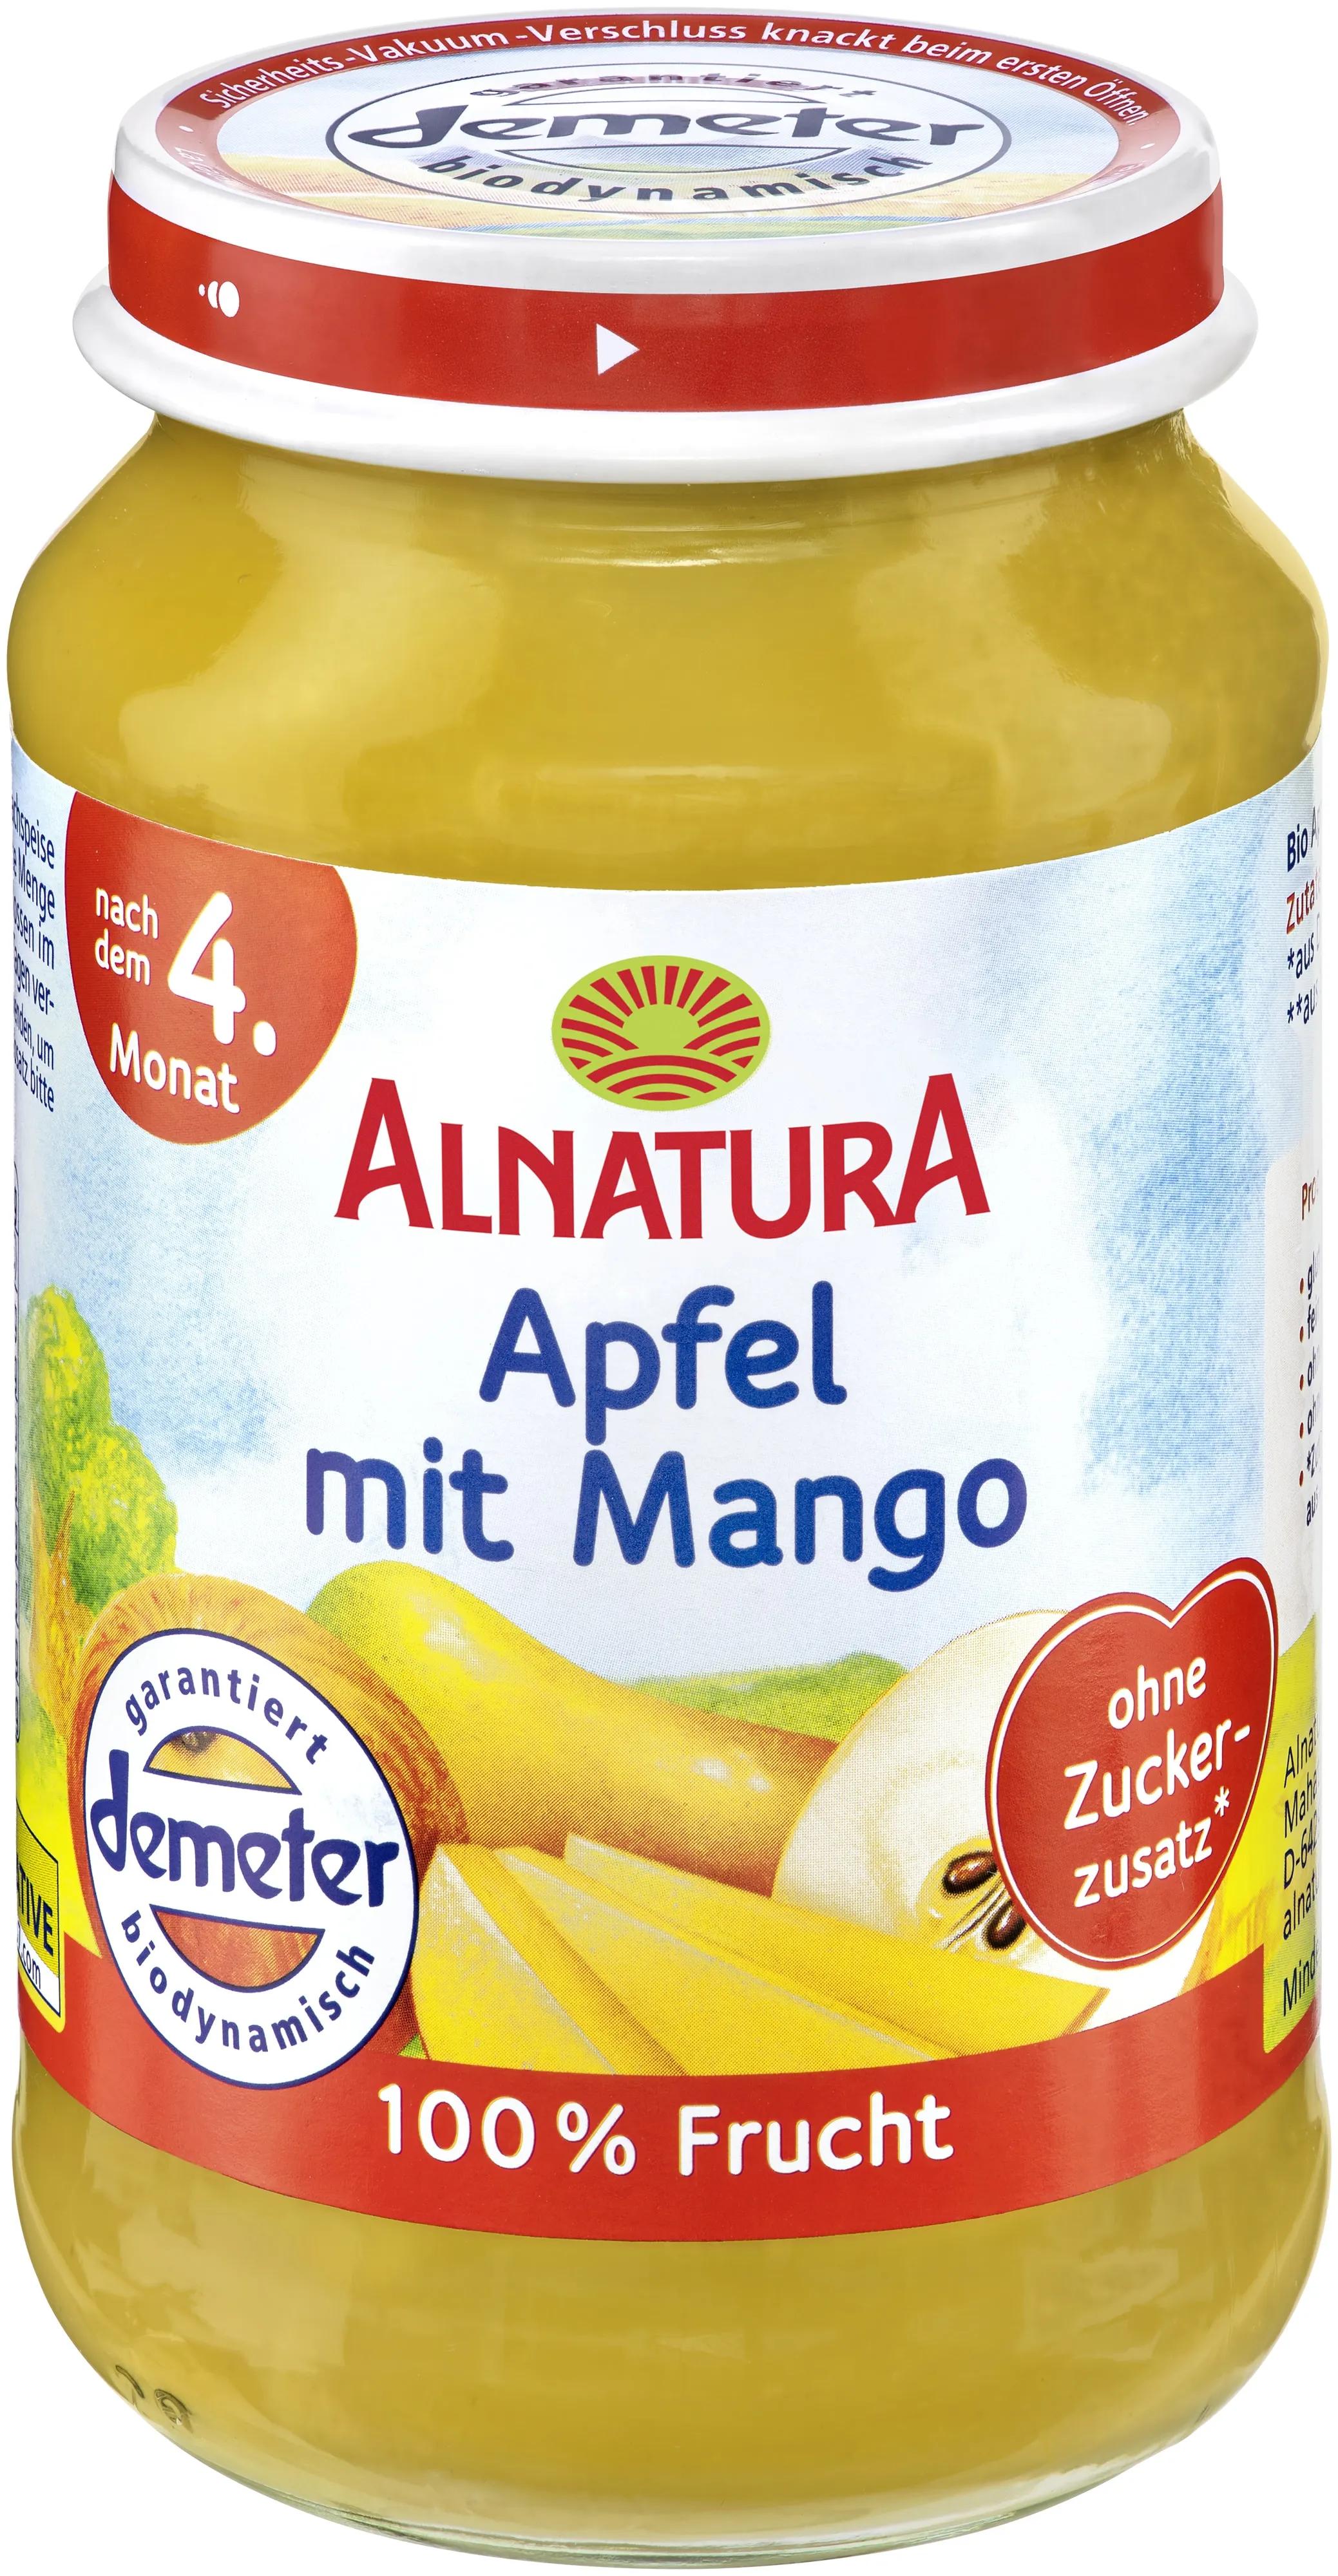 Apfel mit Mango (190 g) in Bio-Qualität von Alnatura